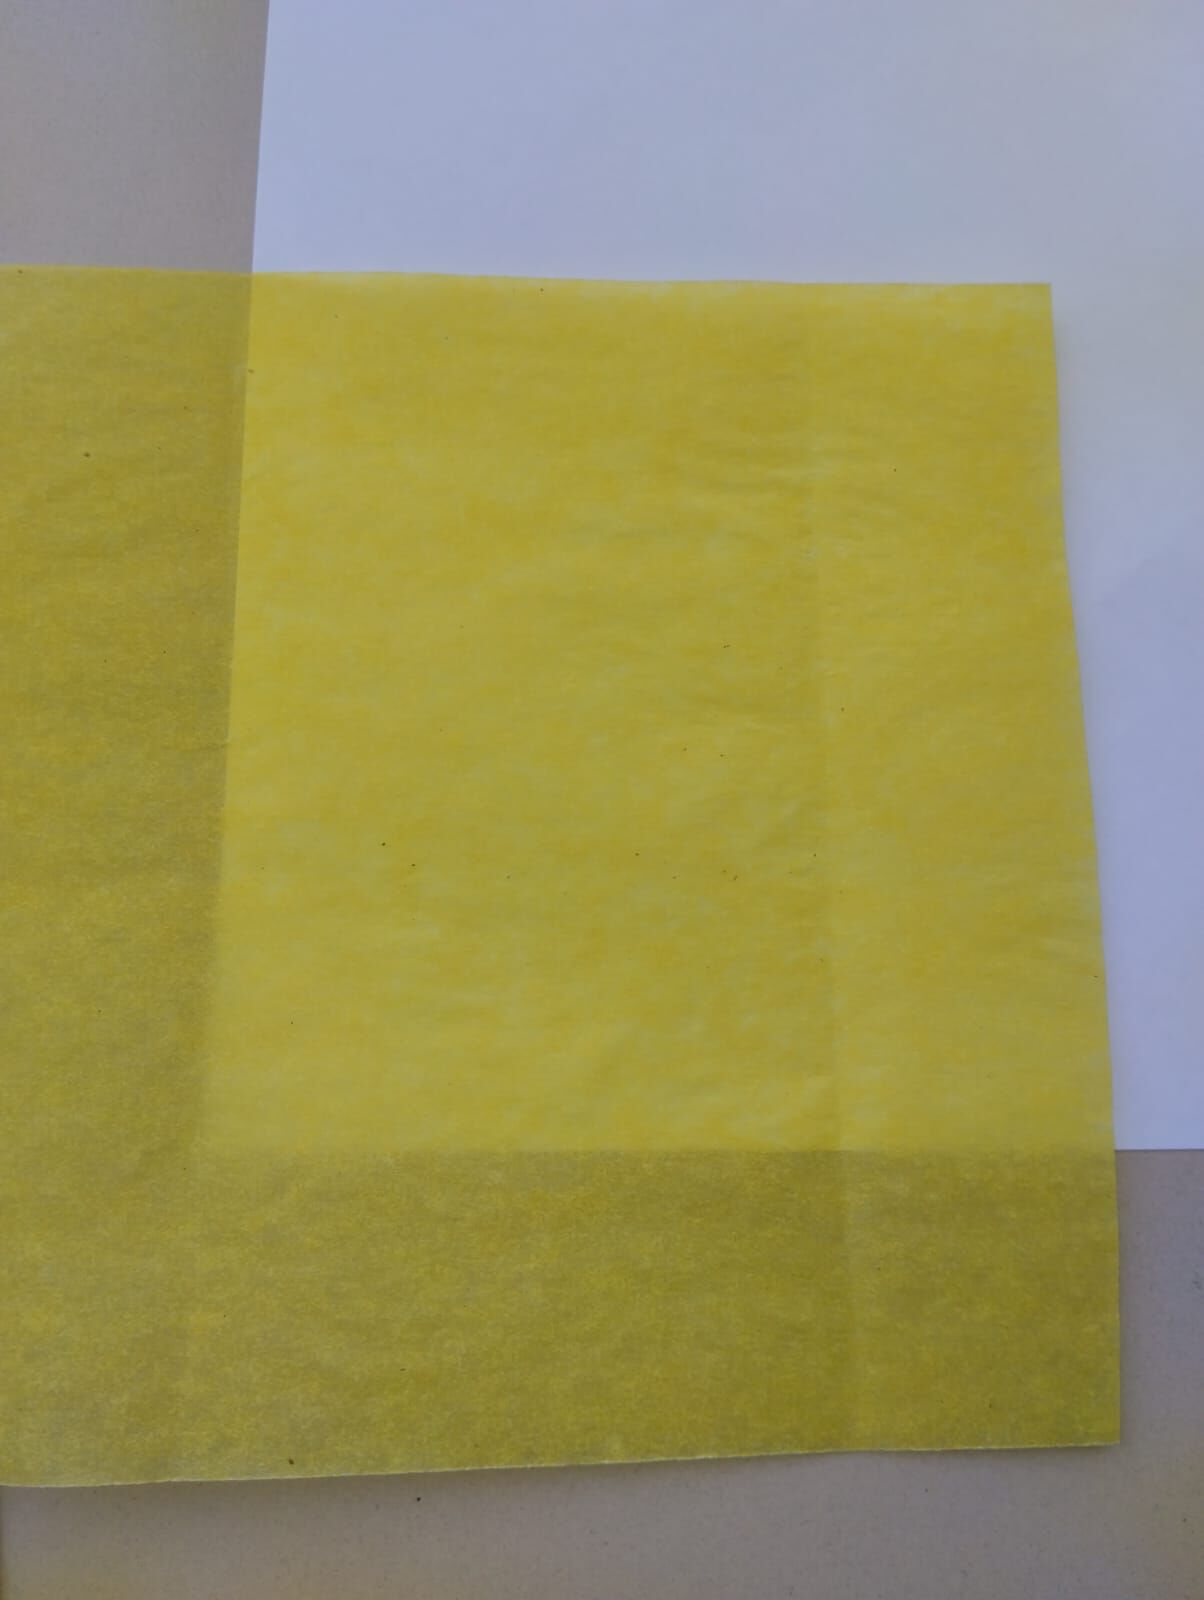 Цветной подпергамент в рулонах. Цвет - жёлтый.